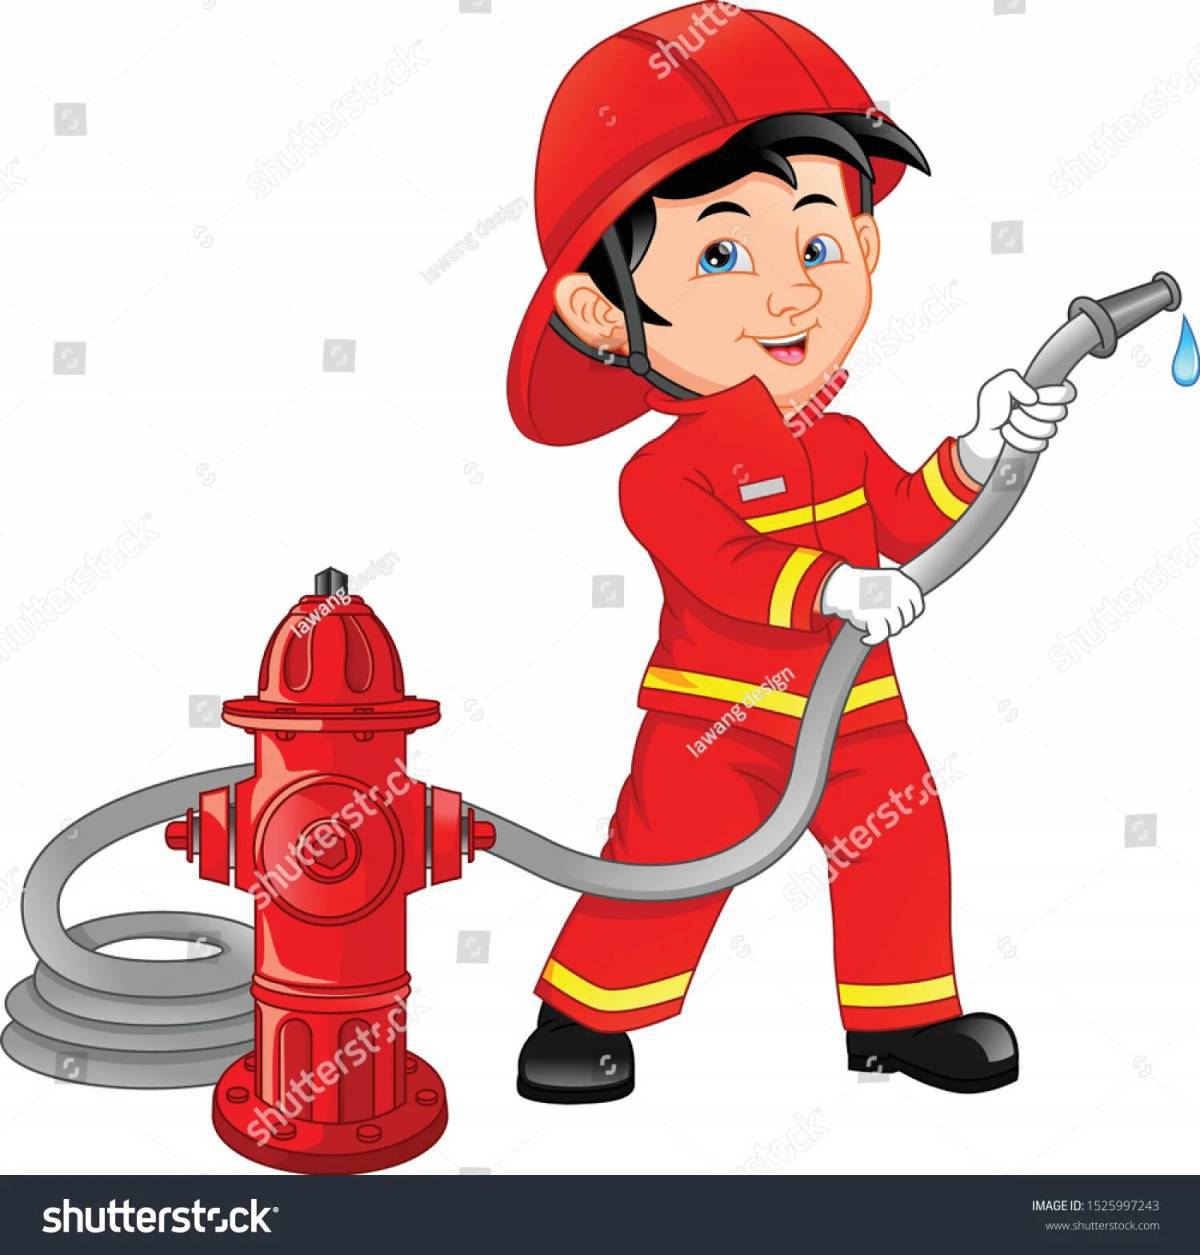 Пожарник для детей #25